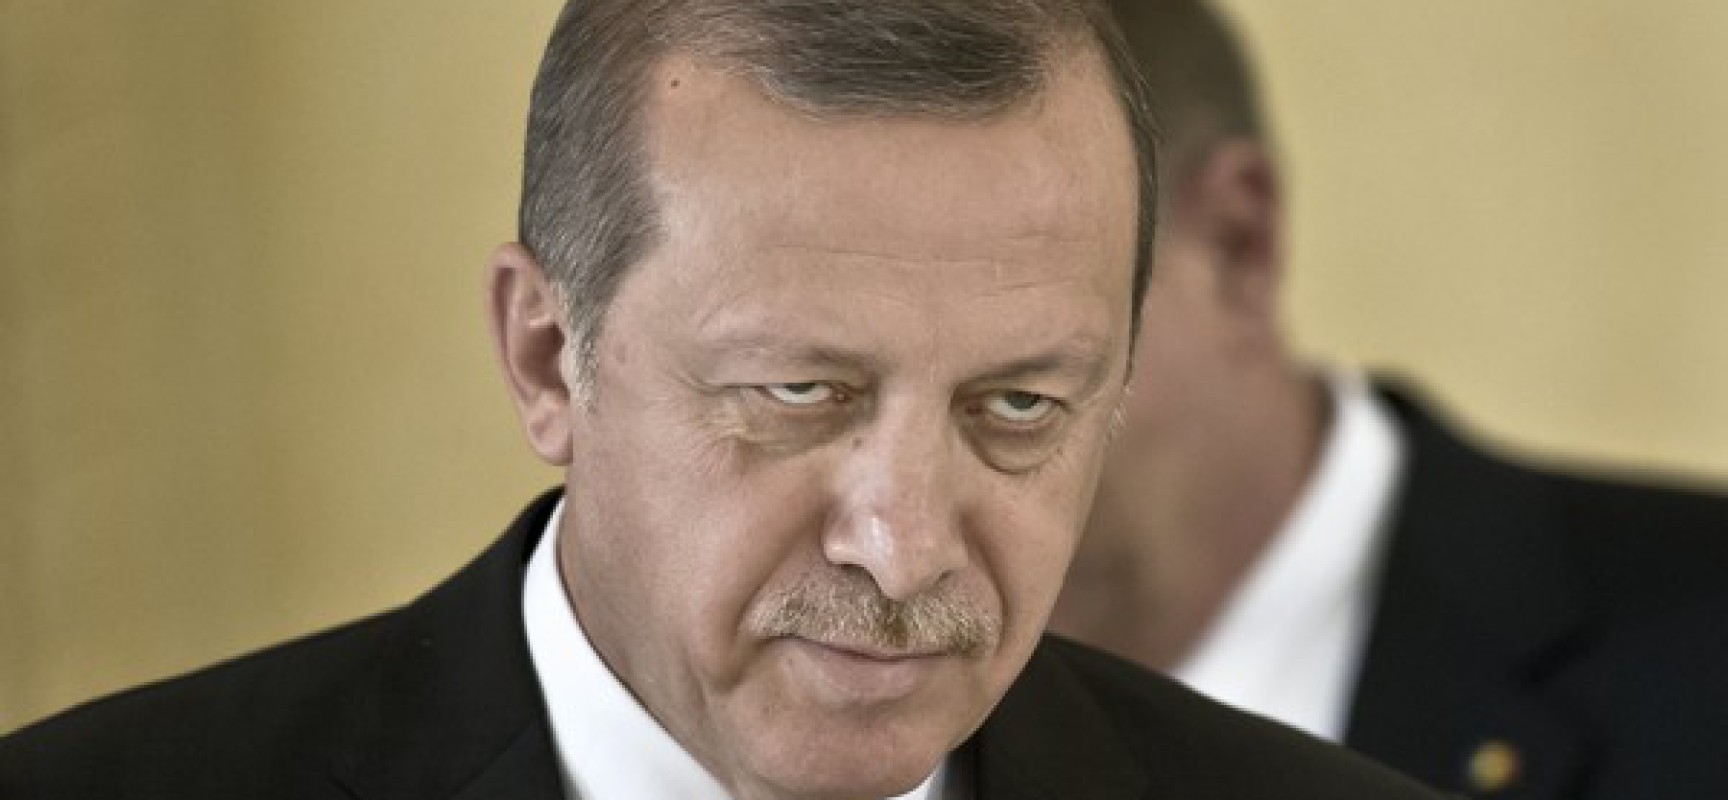 أخيرا.. أوروبا تنتبه لأردوغان الإرهابي